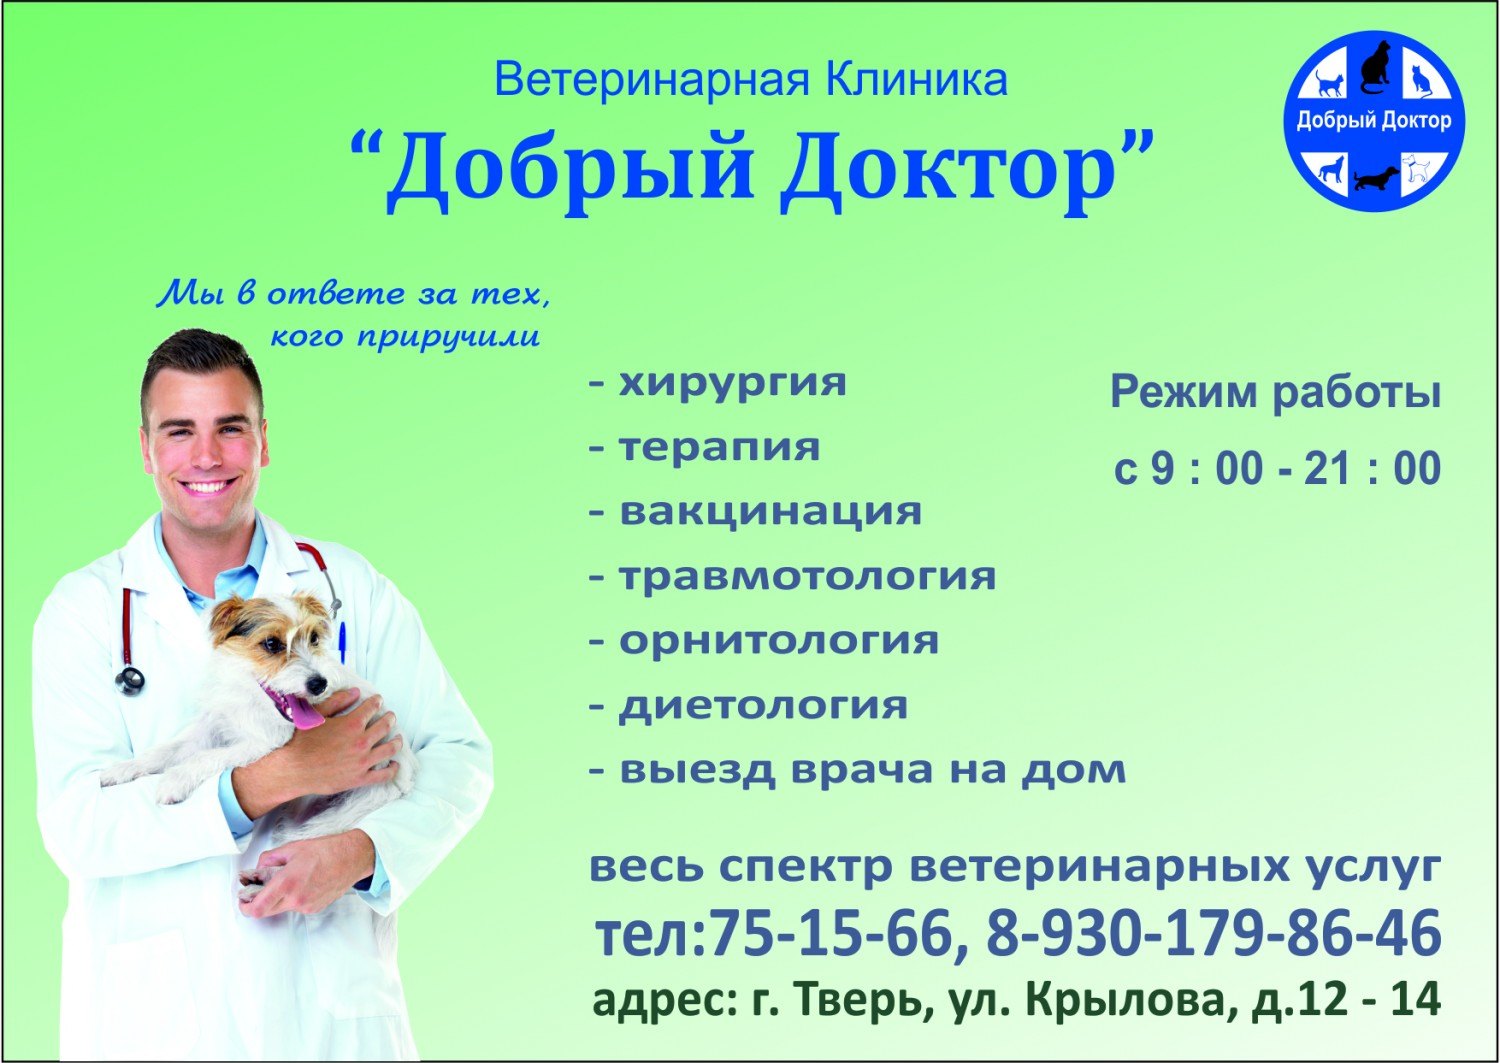 Телефон ветеринарной лечебницы. Добрый доктор Ярославль ветклиника. Добрый доктор Тверь ветеринарная клиника. Добрый доктор во Владимире ветеринарная клиника. Номер ветеринарной клиники.